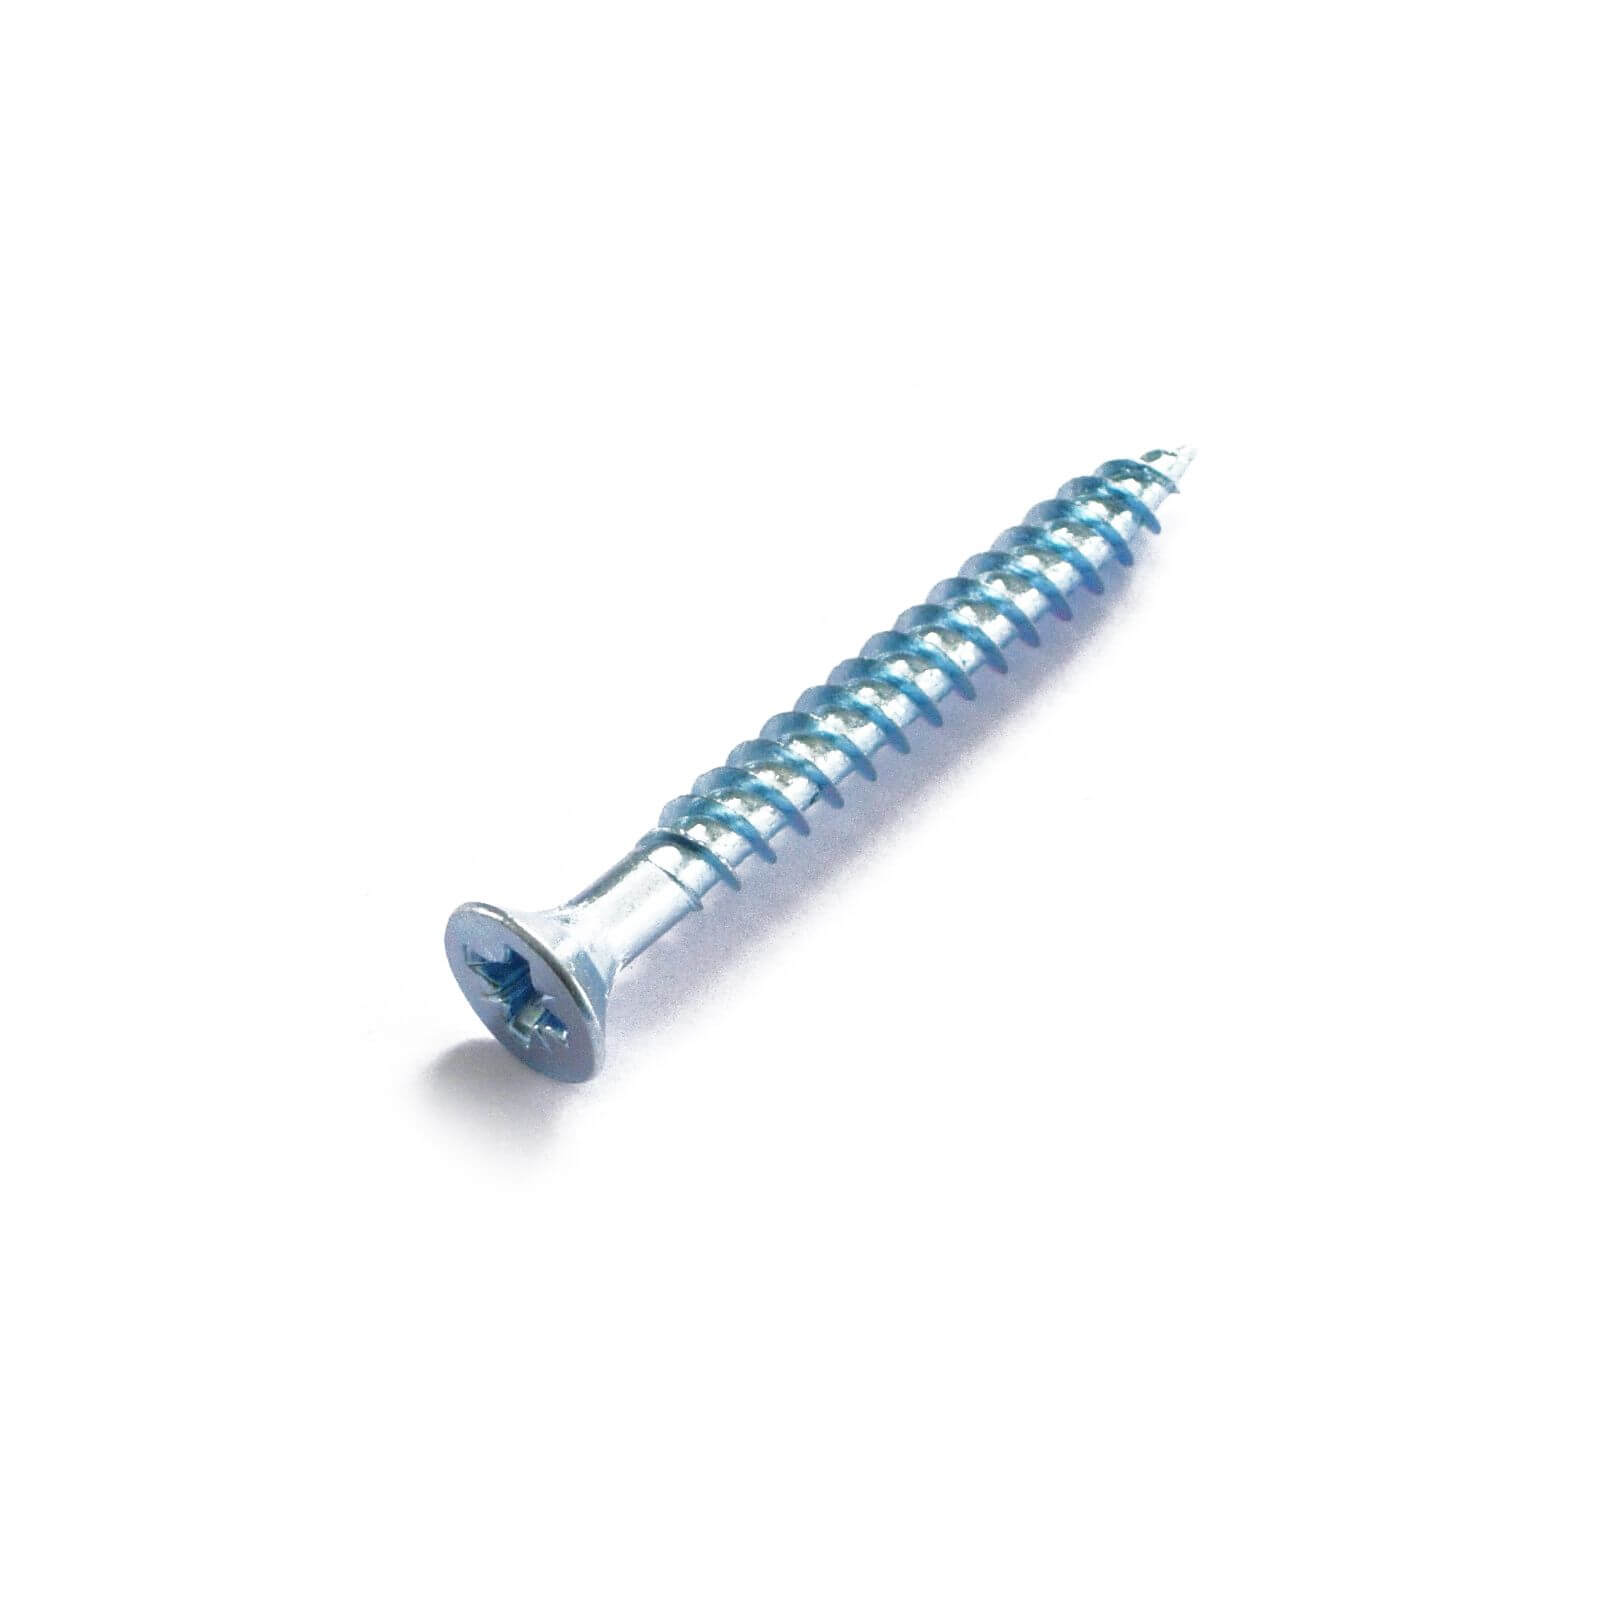 Tiwn Thread Screw - Bright Zinc Plated - 4 x 20mm - 25 Pack